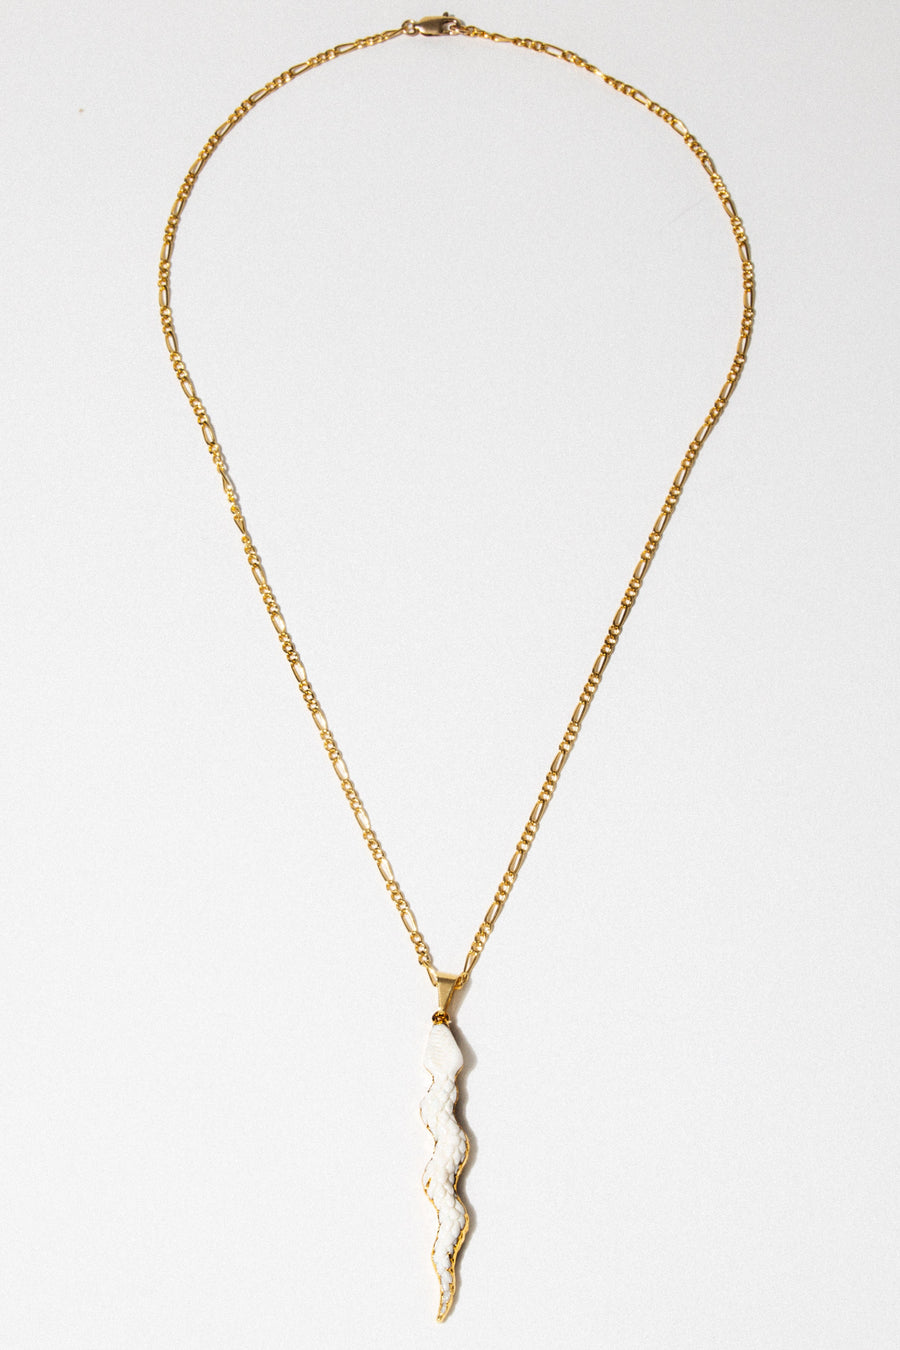 Dona Italia Jewelry Gold / 20 Inches Queen Cobra Figaro Necklace